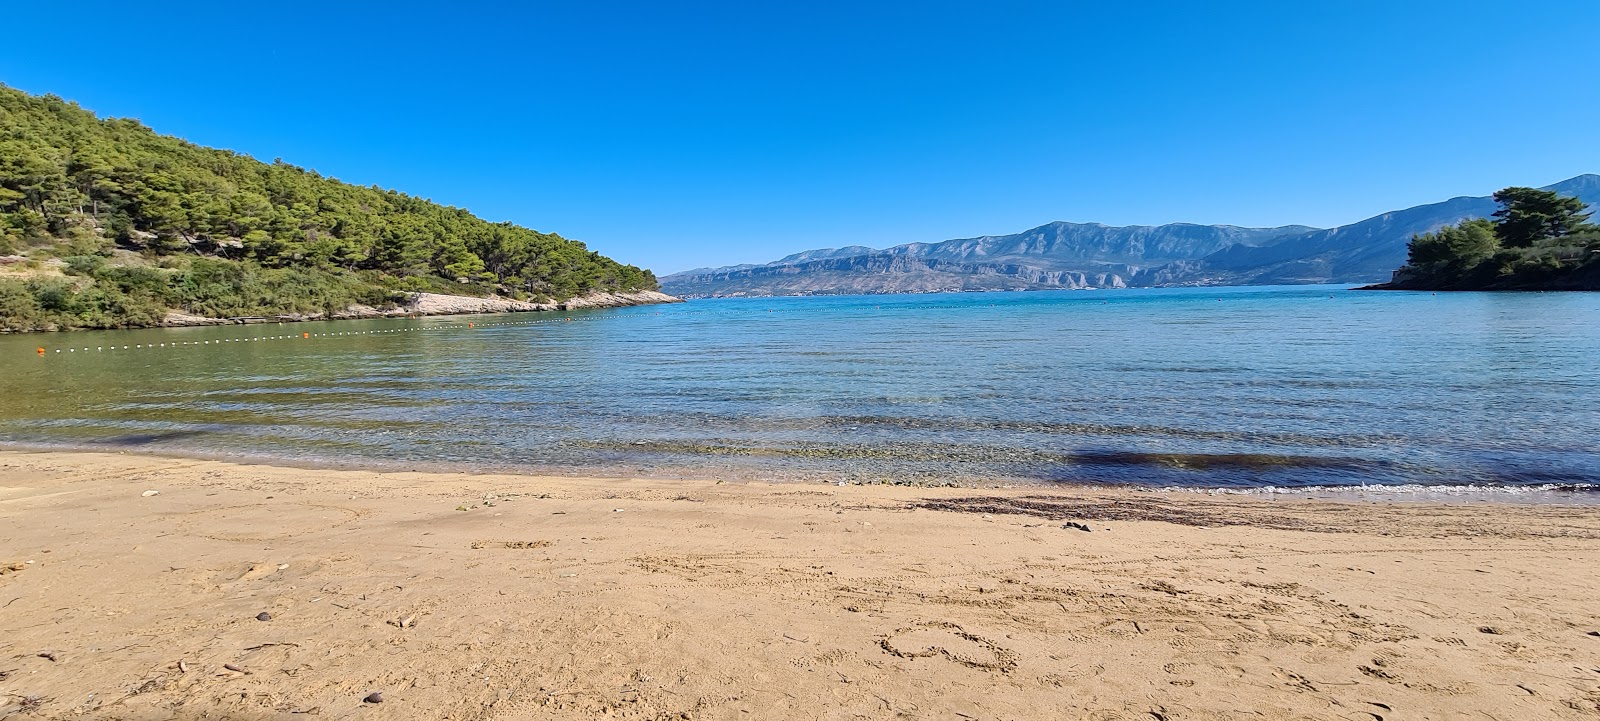 Foto van Lovrecina beach met turquoise water oppervlakte